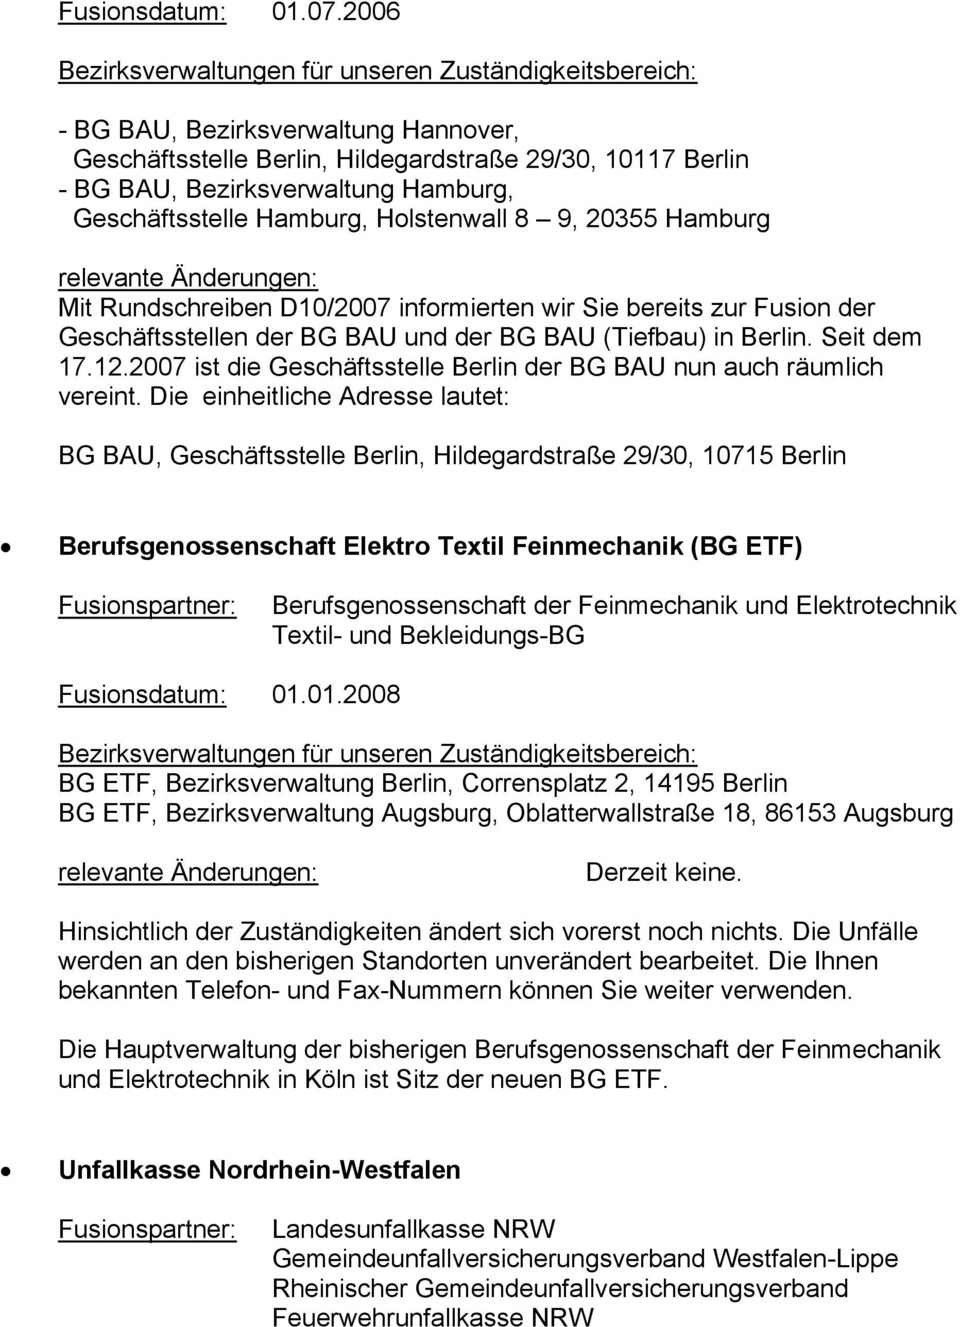 relevante Änderungen: Mit Rundschreiben D10/2007 informierten wir Sie bereits zur Fusion der Geschäftsstellen der BG BAU und der BG BAU (Tiefbau) in Berlin. Seit dem 17.12.